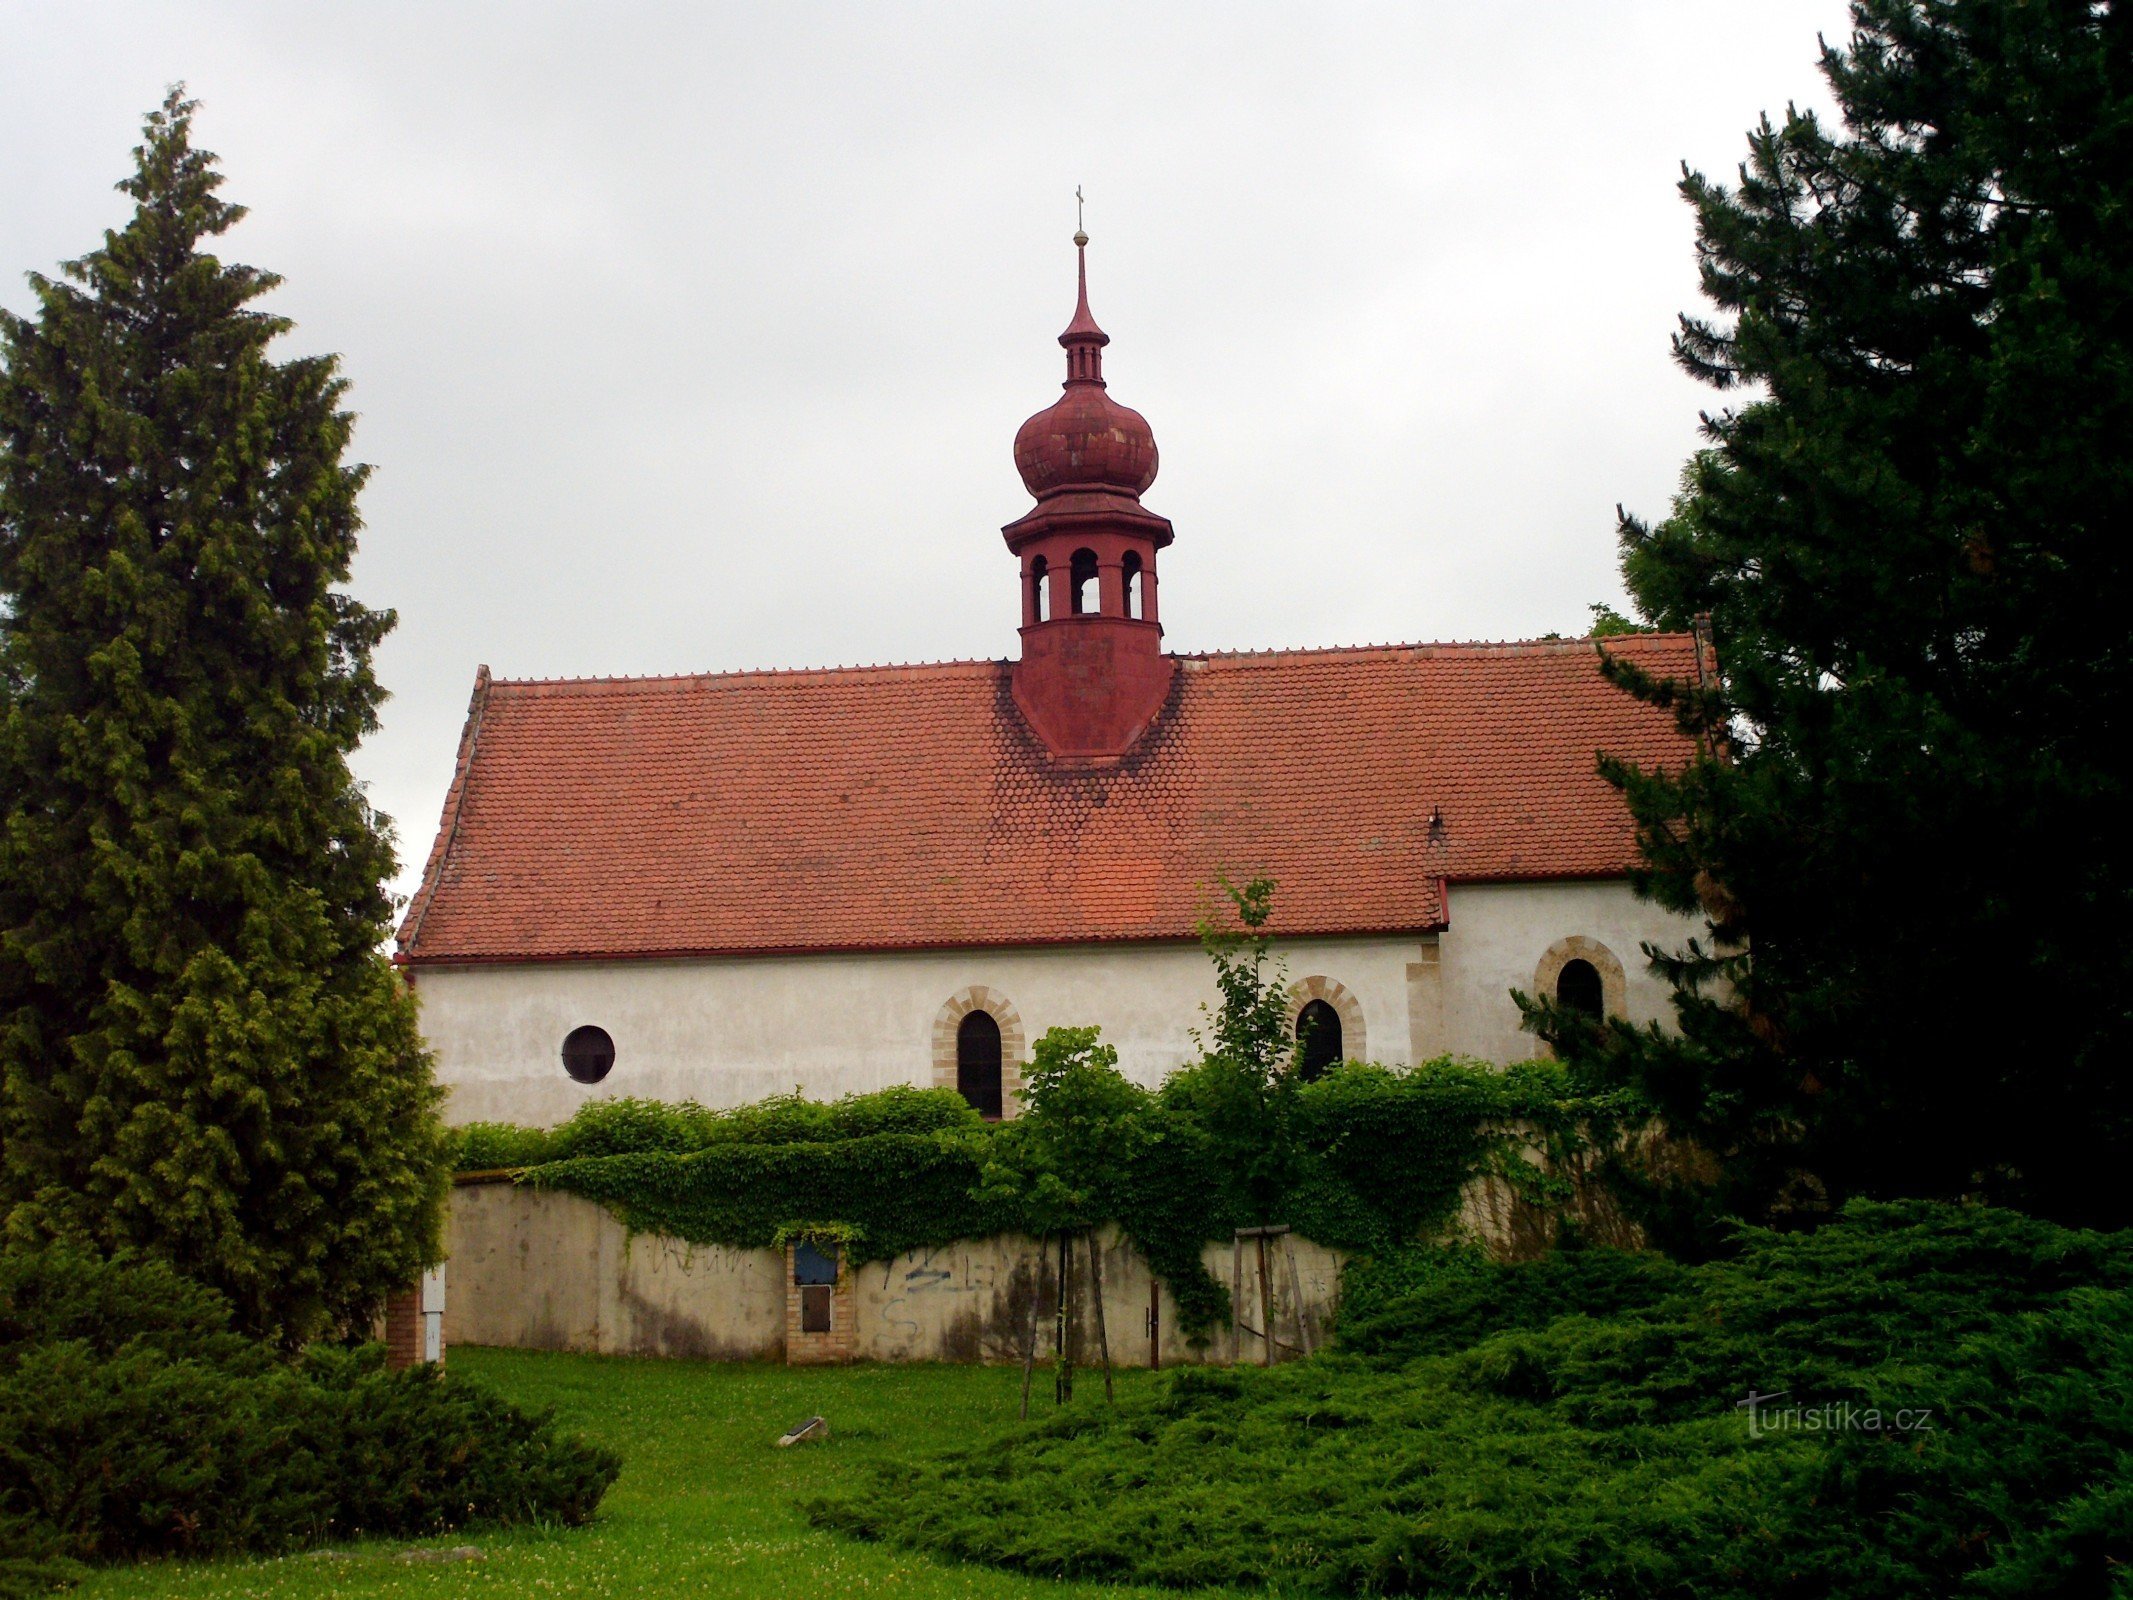 ボスコヴィツェ - 諸聖人の分派教会